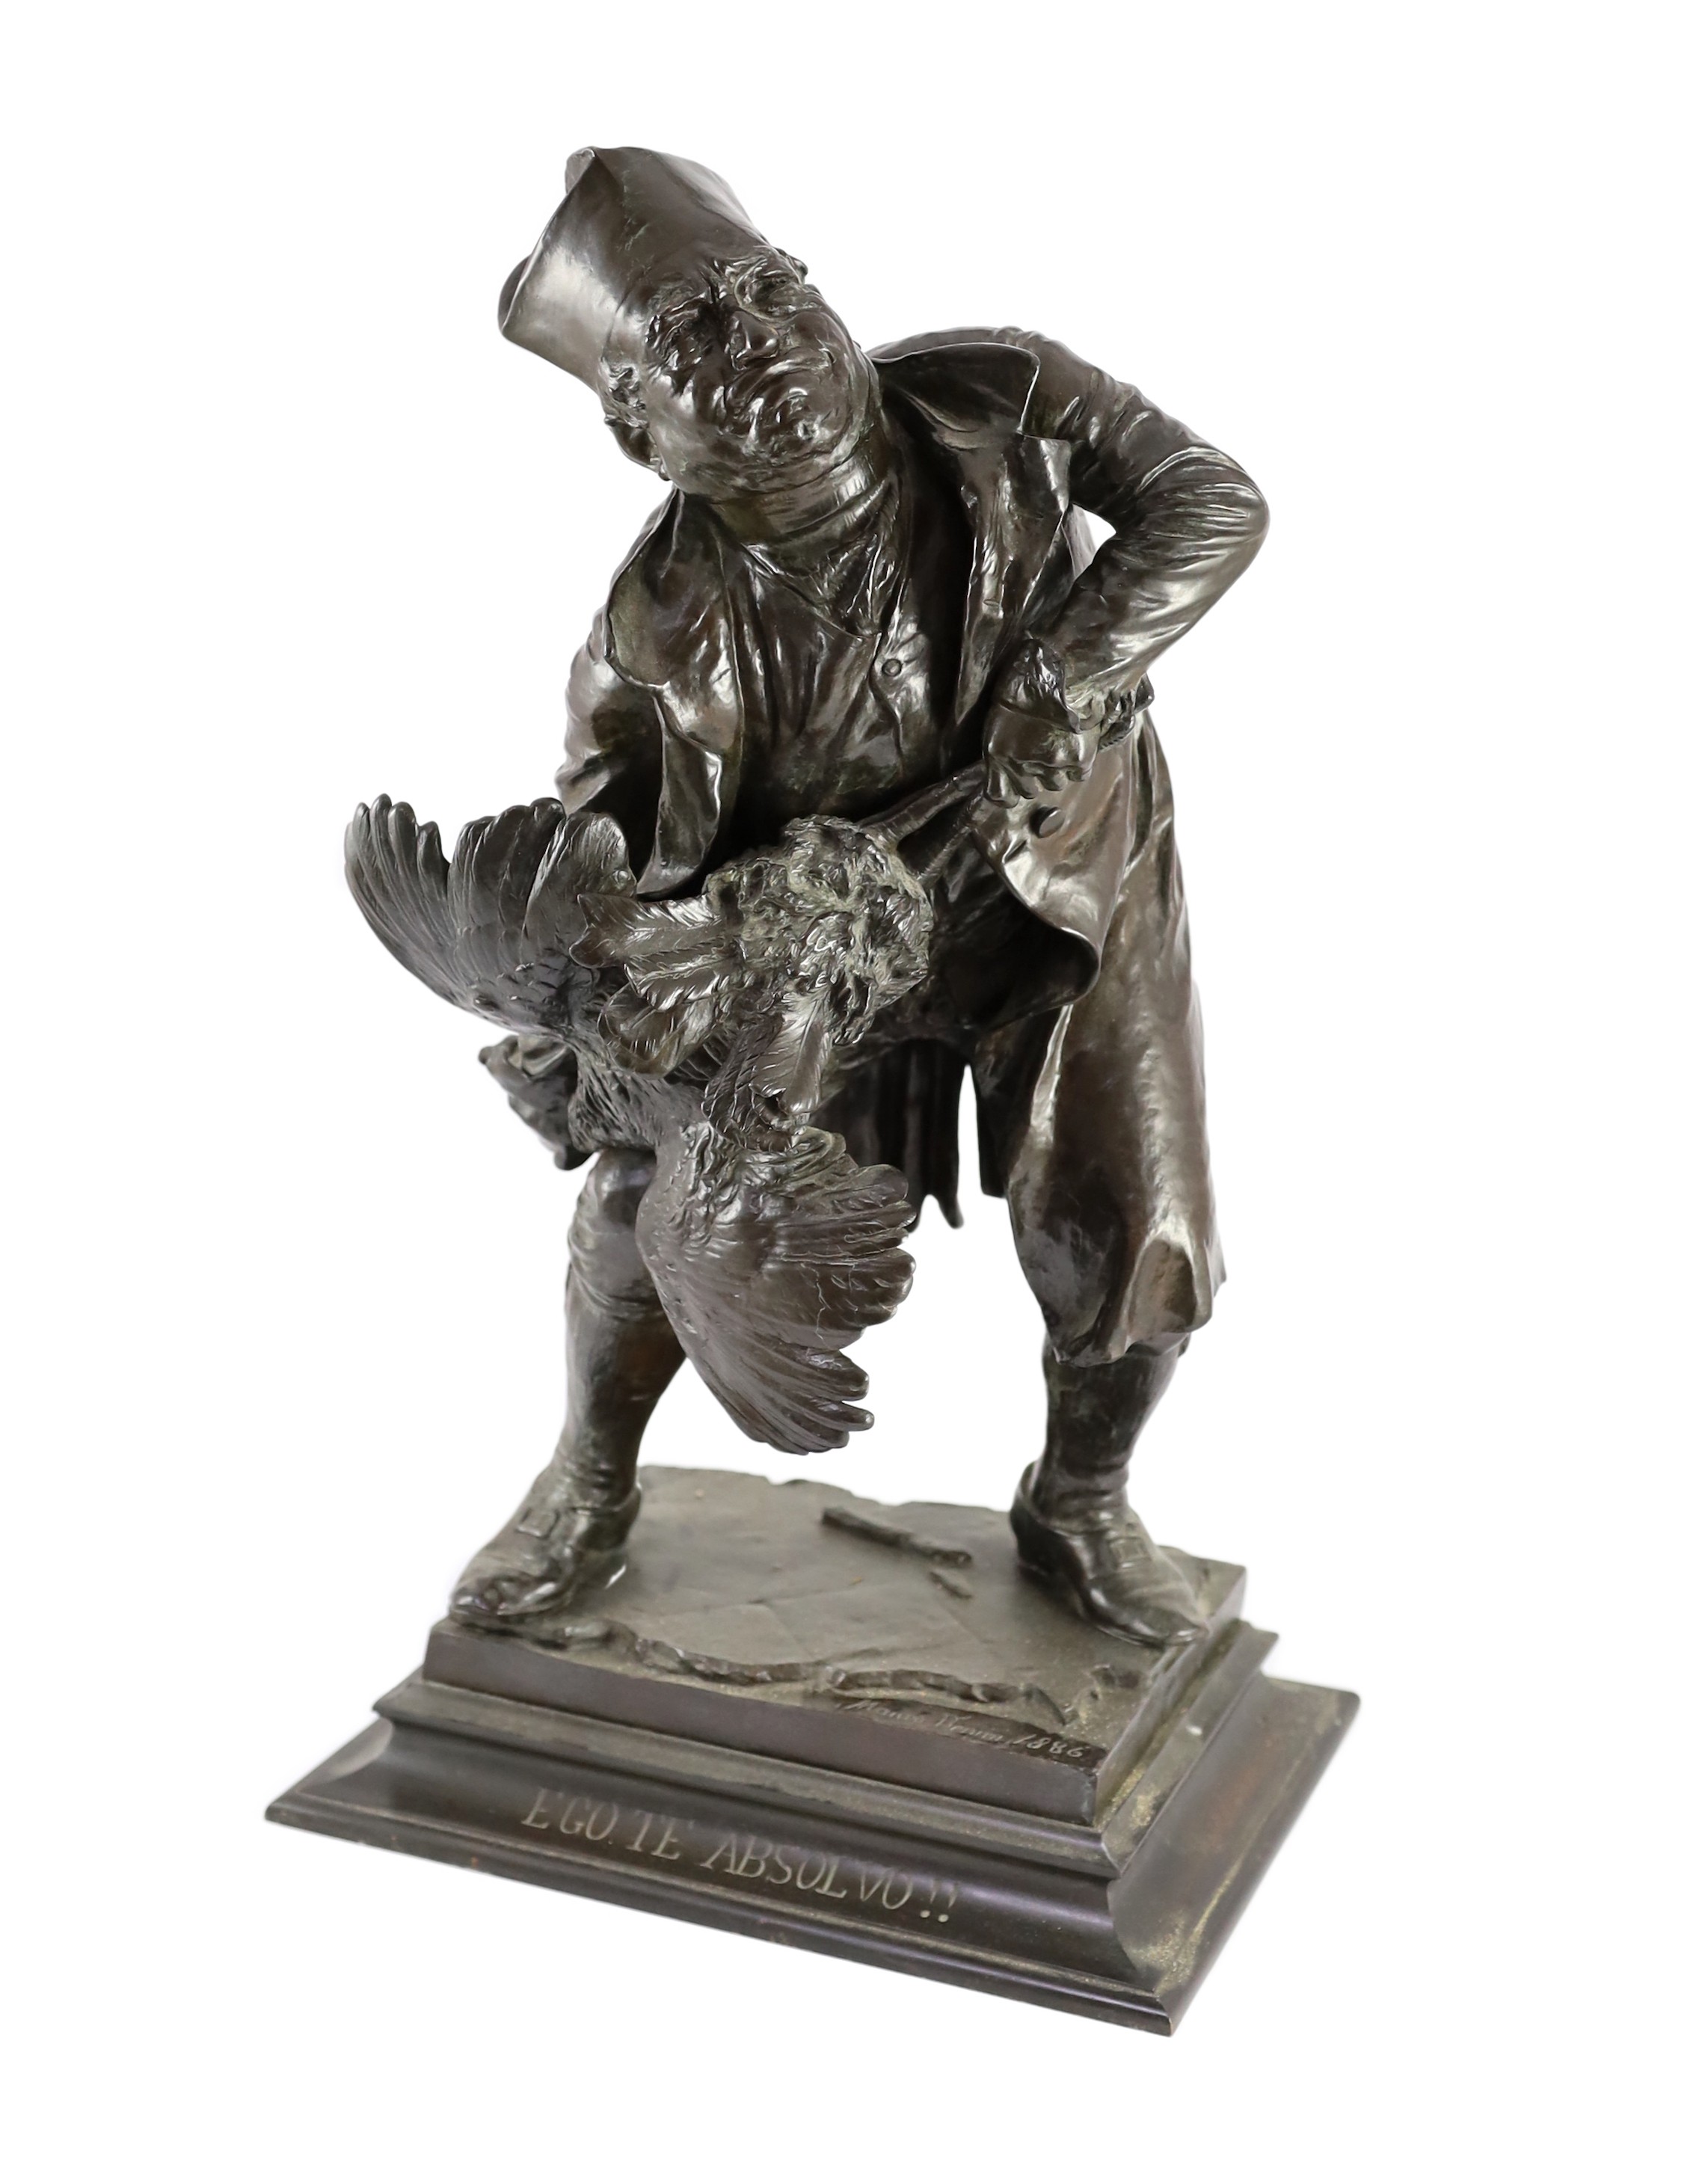 Mauro Benini (Italian, 1856-1915). A bronze figure 'Ego te Absolvo!!', 29cm wide 50cm high                                                                                                                                  